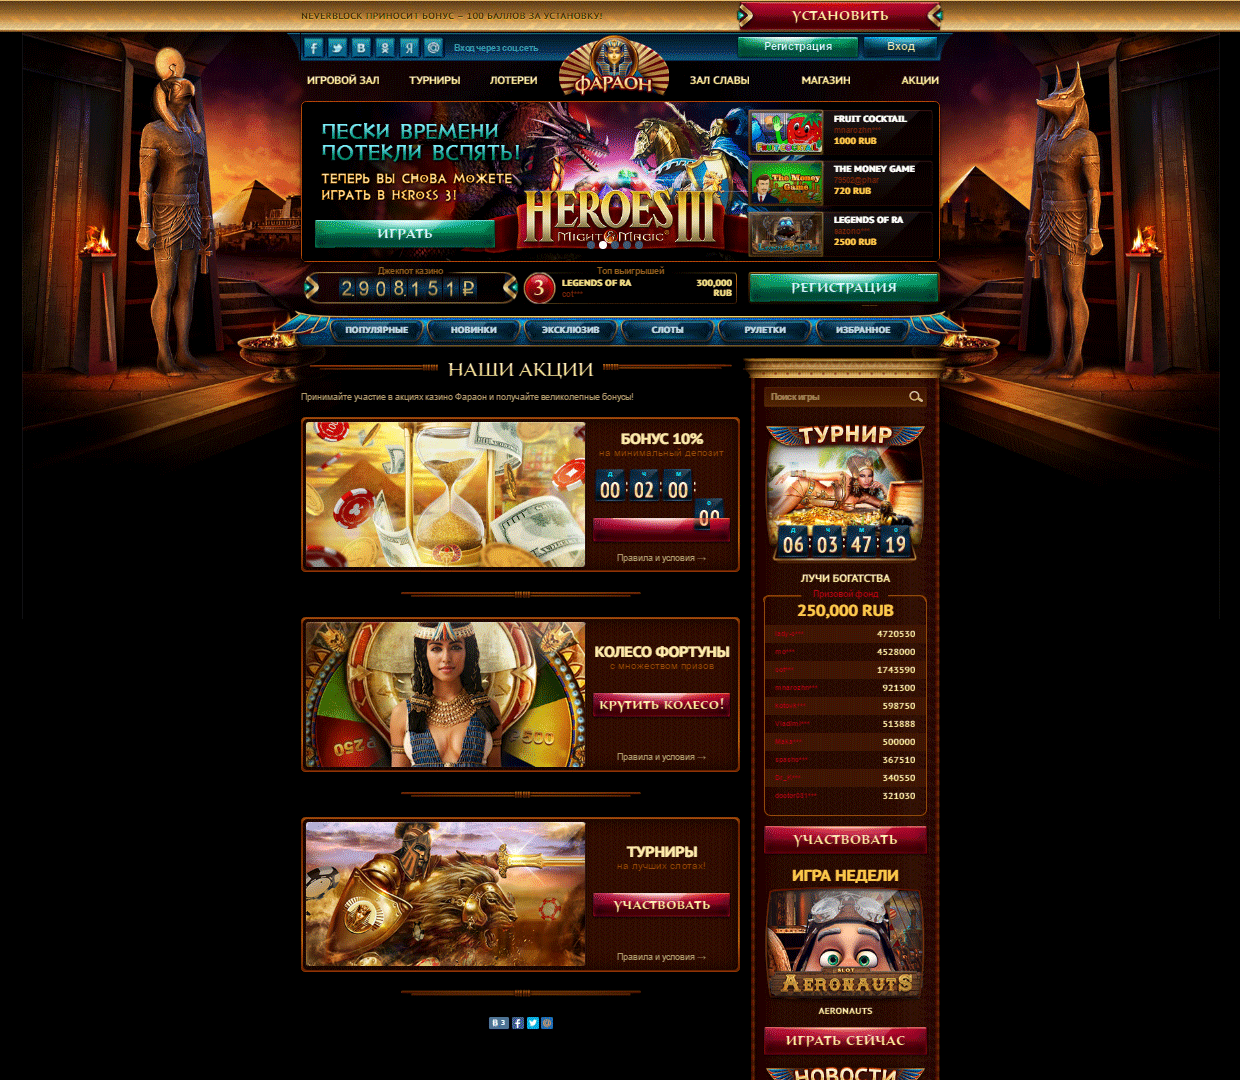 Онлайн казино фараон рулетка играть на деньги топ онлайн казино на рубли kazinonadengitop2 com